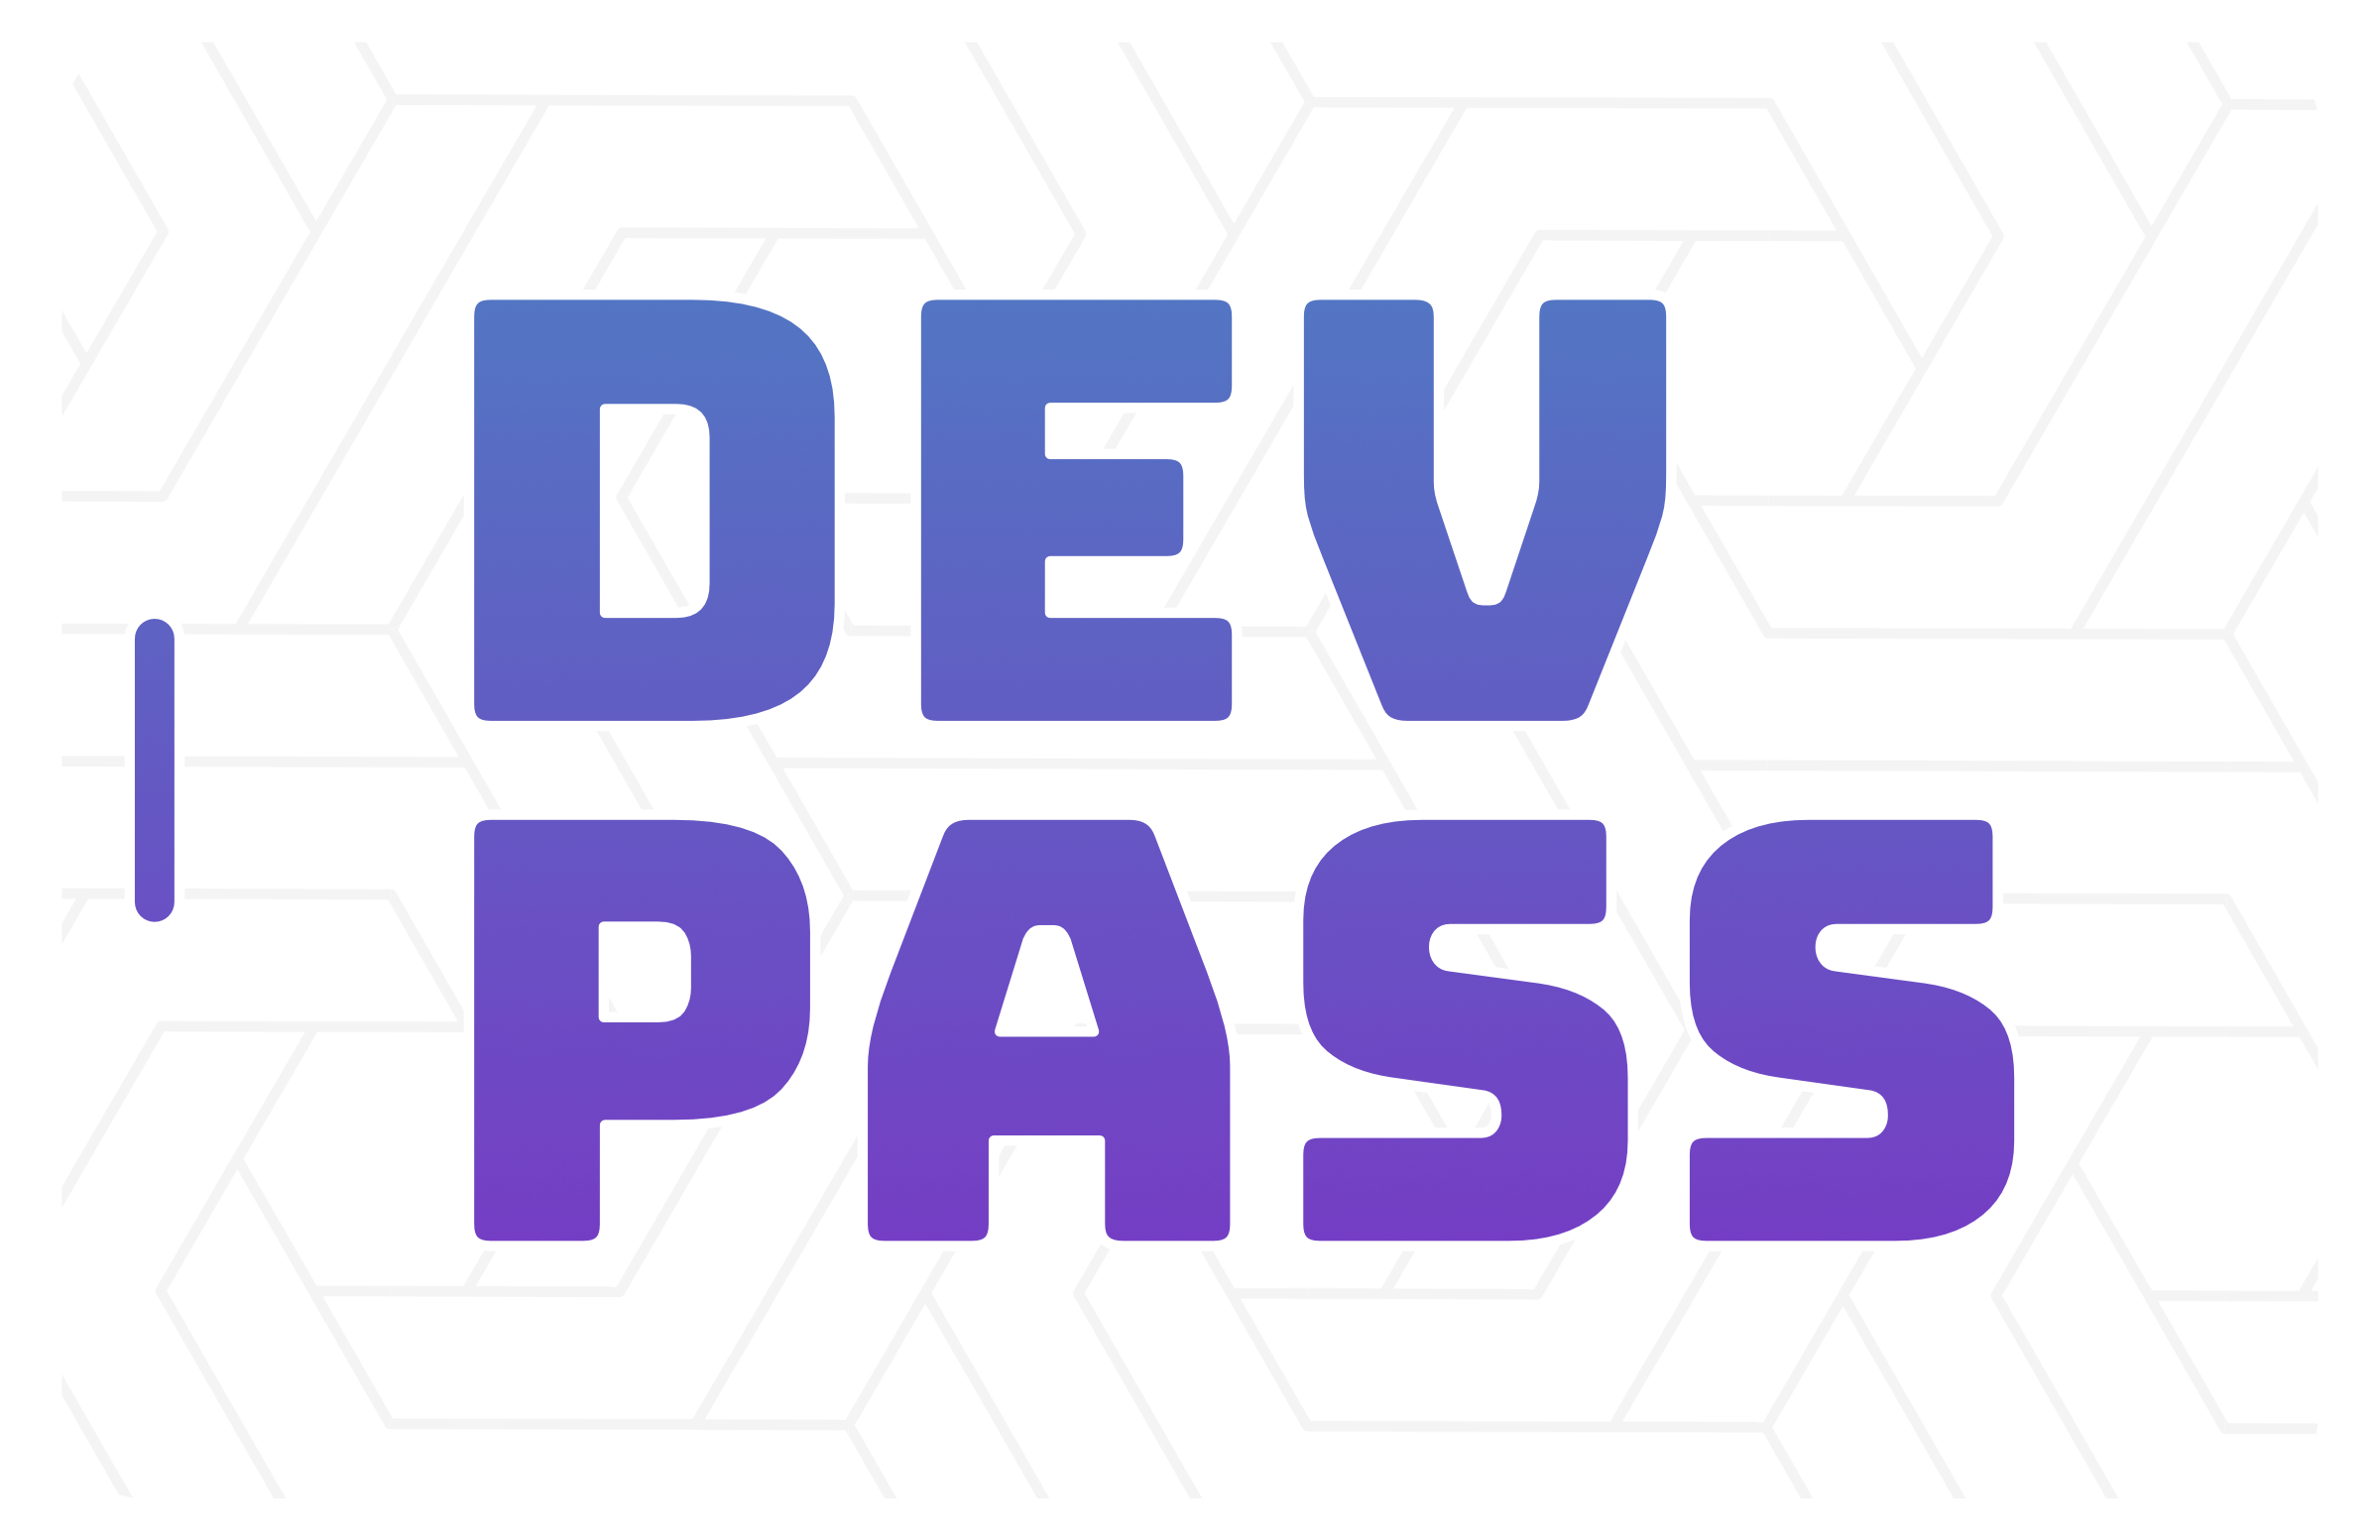 The DevPass Logo